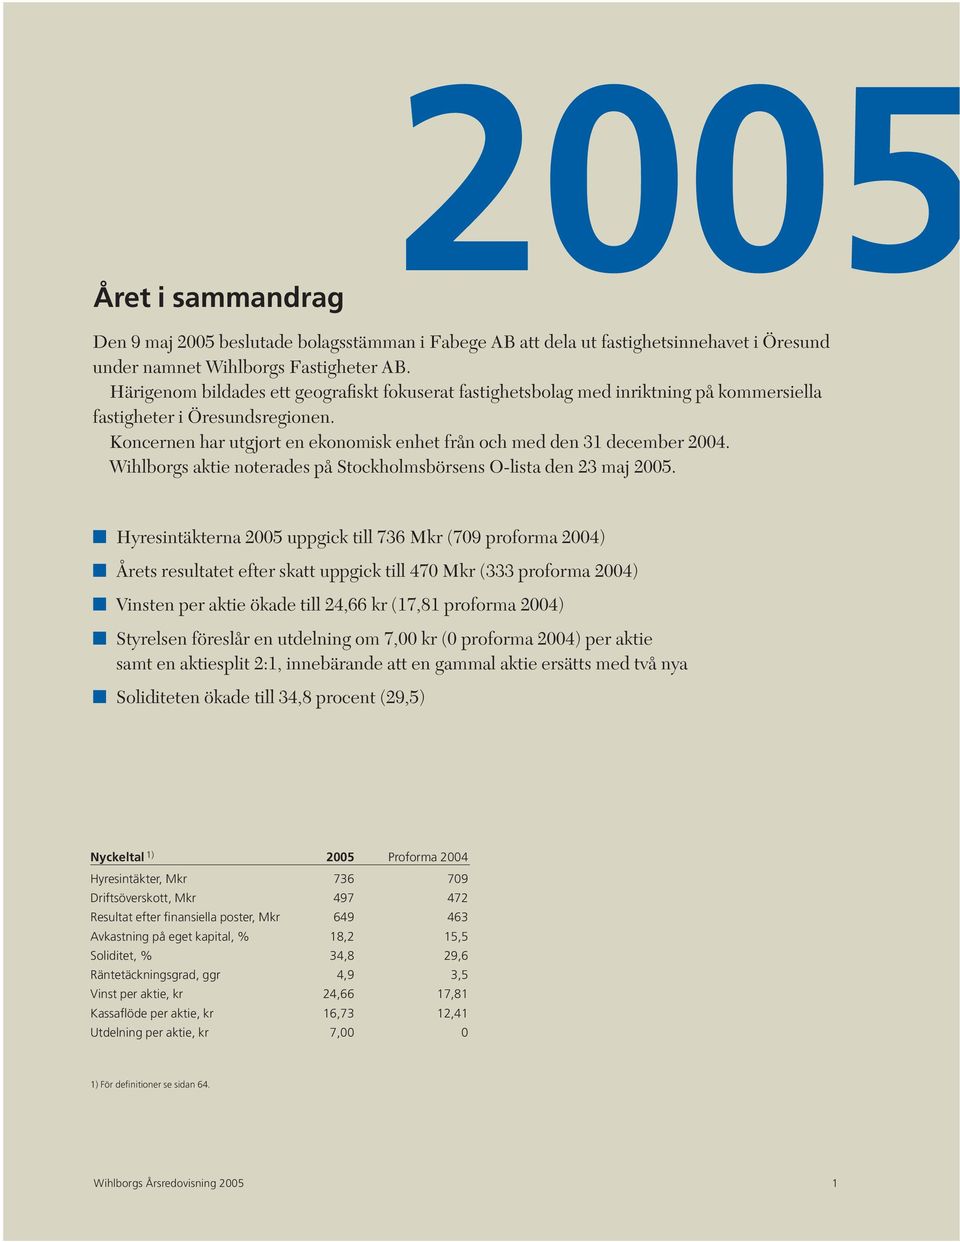 Wihlborgs aktie noterades på Stockholmsbörsens O-lista den 23 maj 2005.